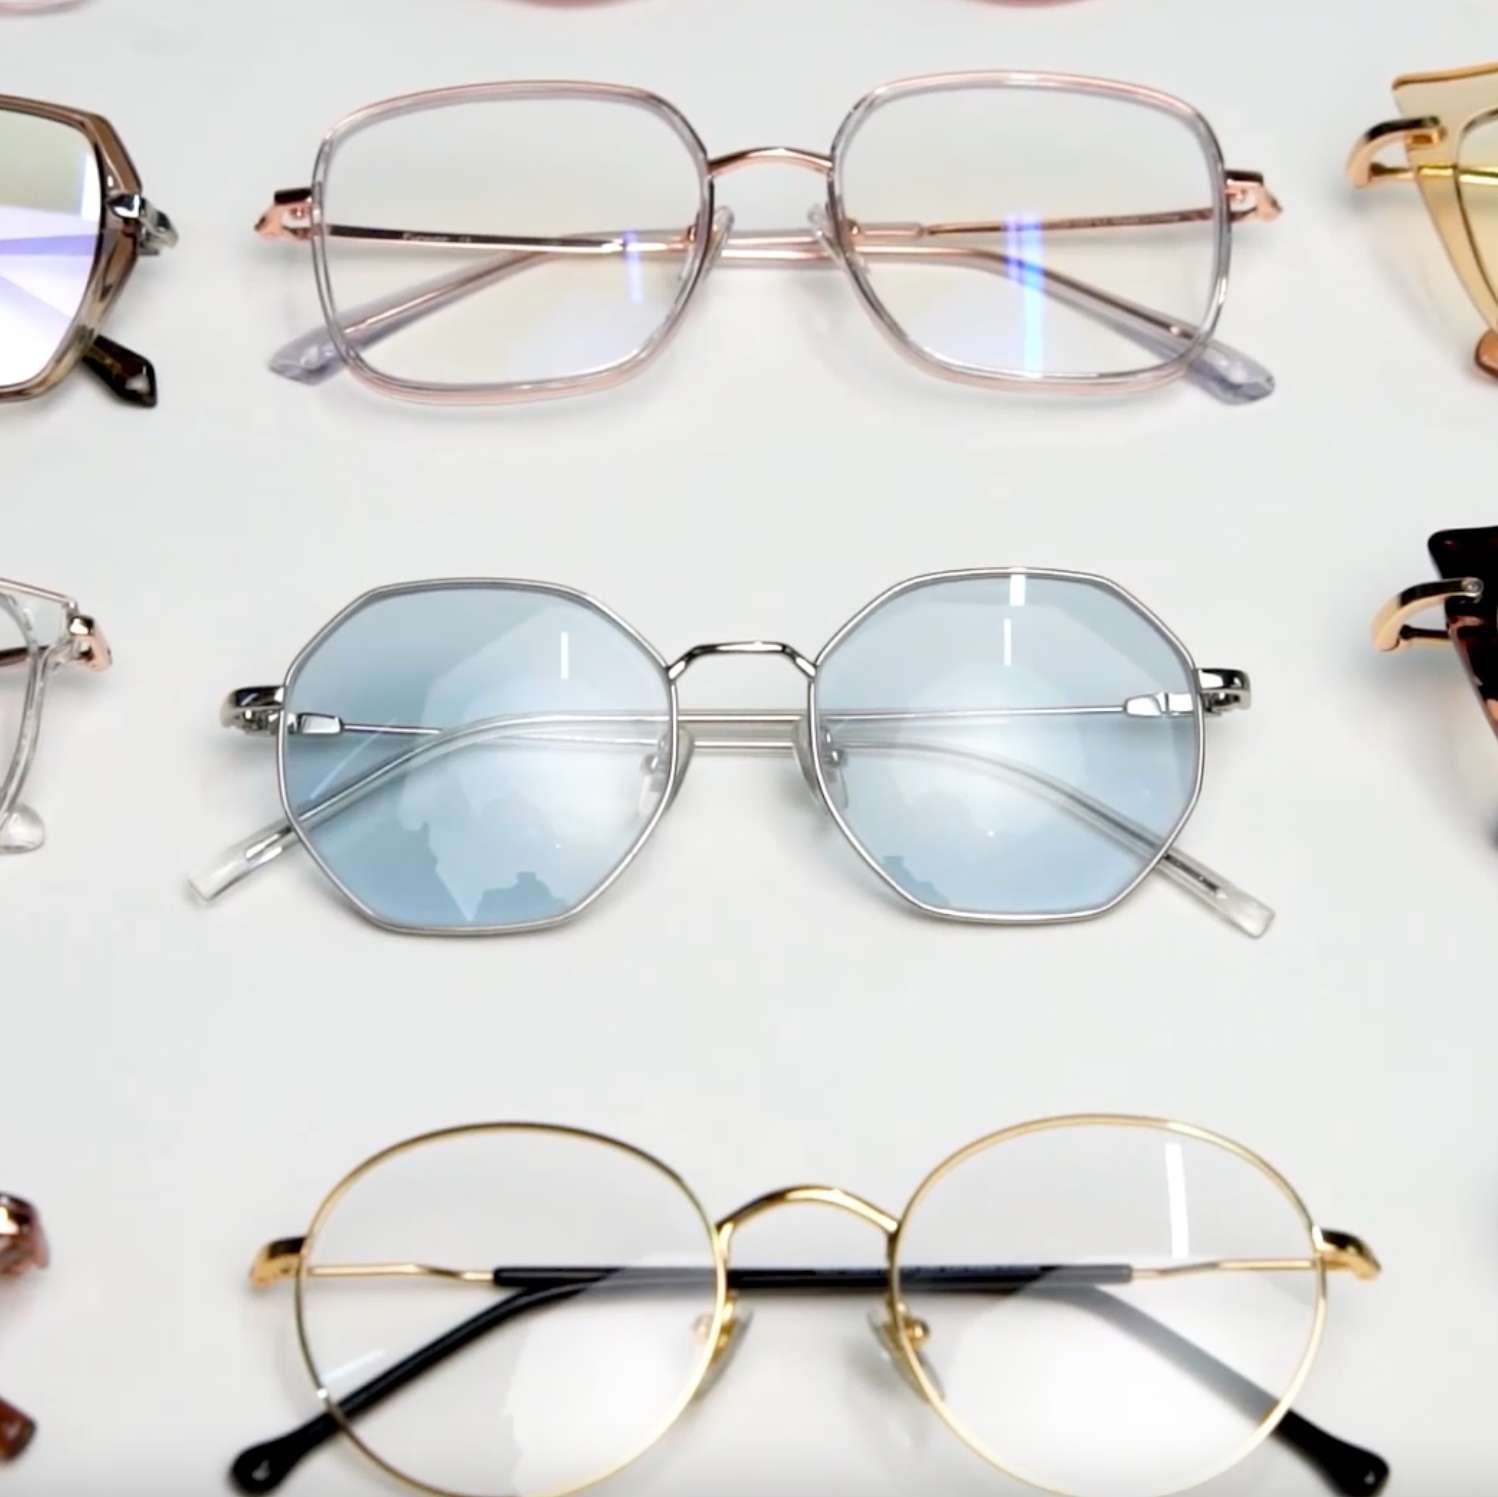  Su tienda de anteojos en línea preferida - Anteojos, anteojos de  sol, anteojos ópticos